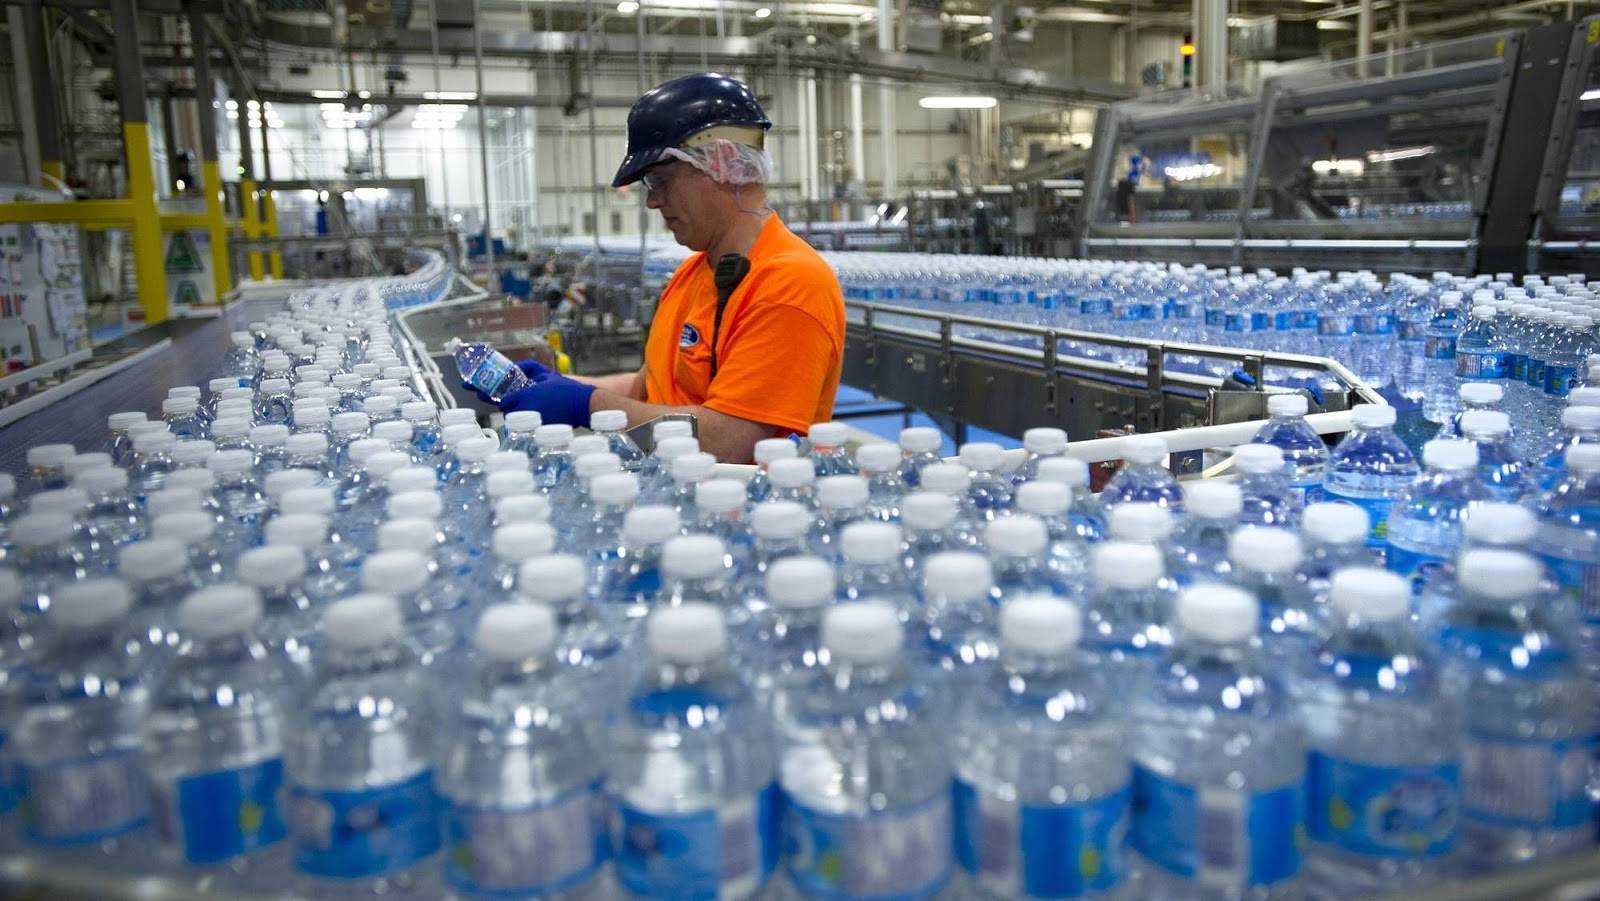 Производство питьевой воды: пошаговая бизнес-идея